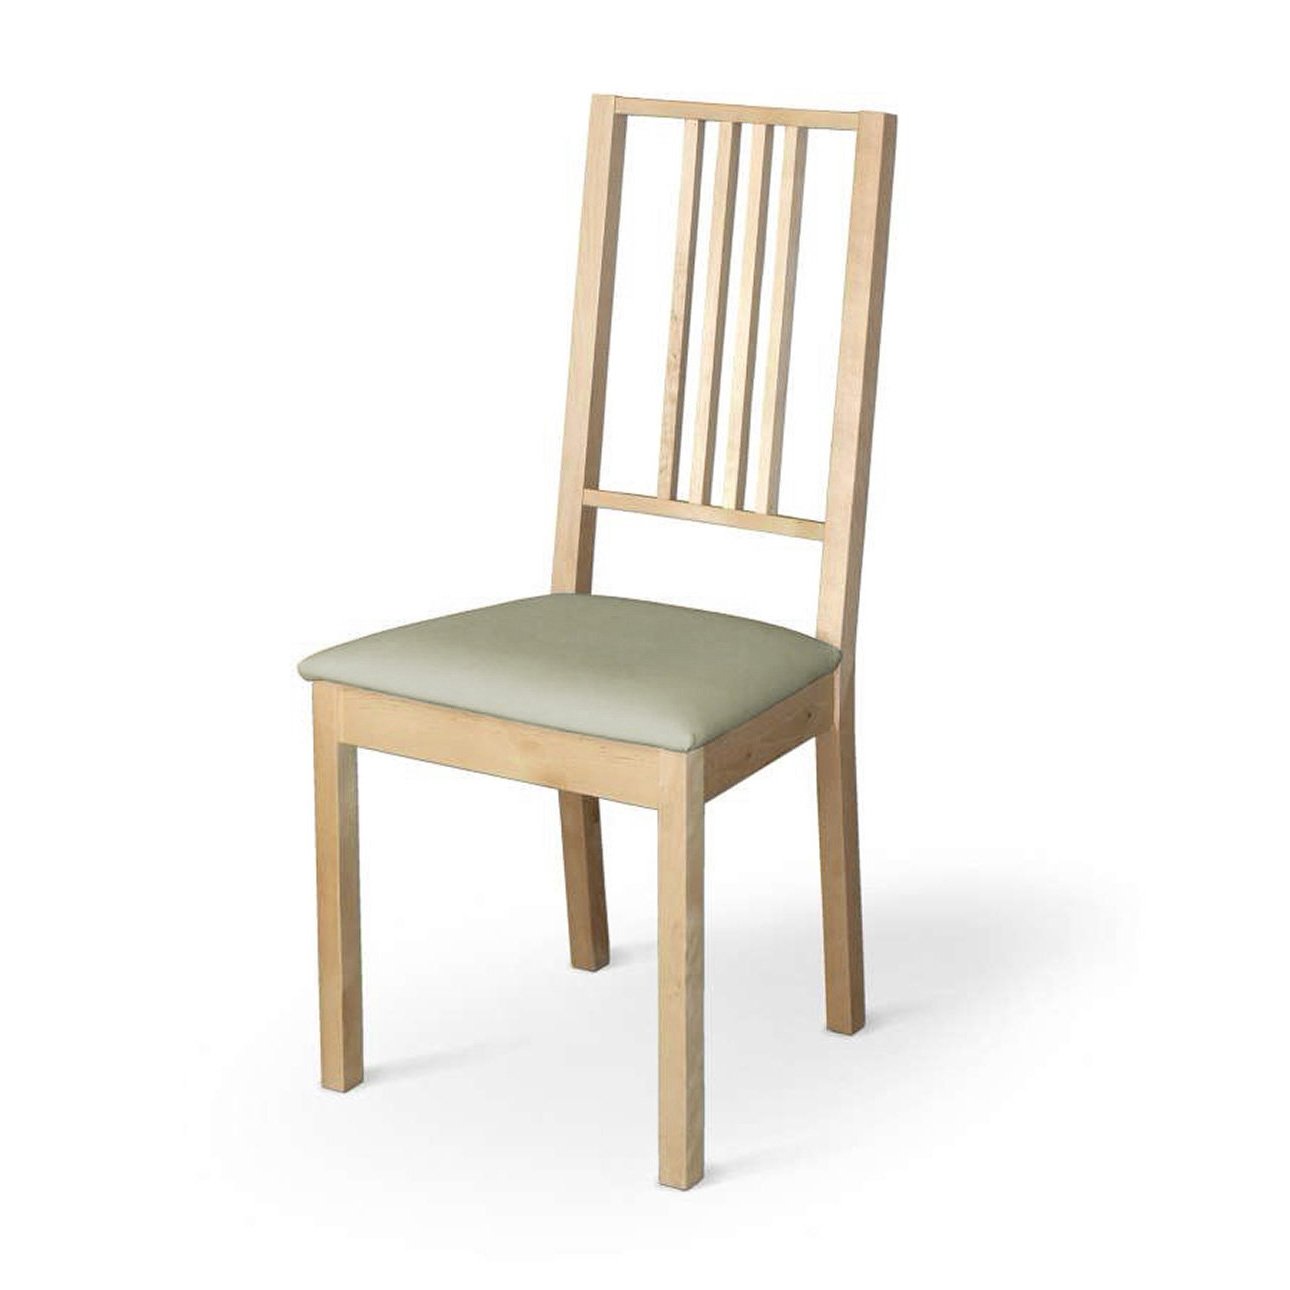 Dekoria Potah na sedák židle Börje, světle olivová, potah sedák židle Börje, Loneta, 133-05